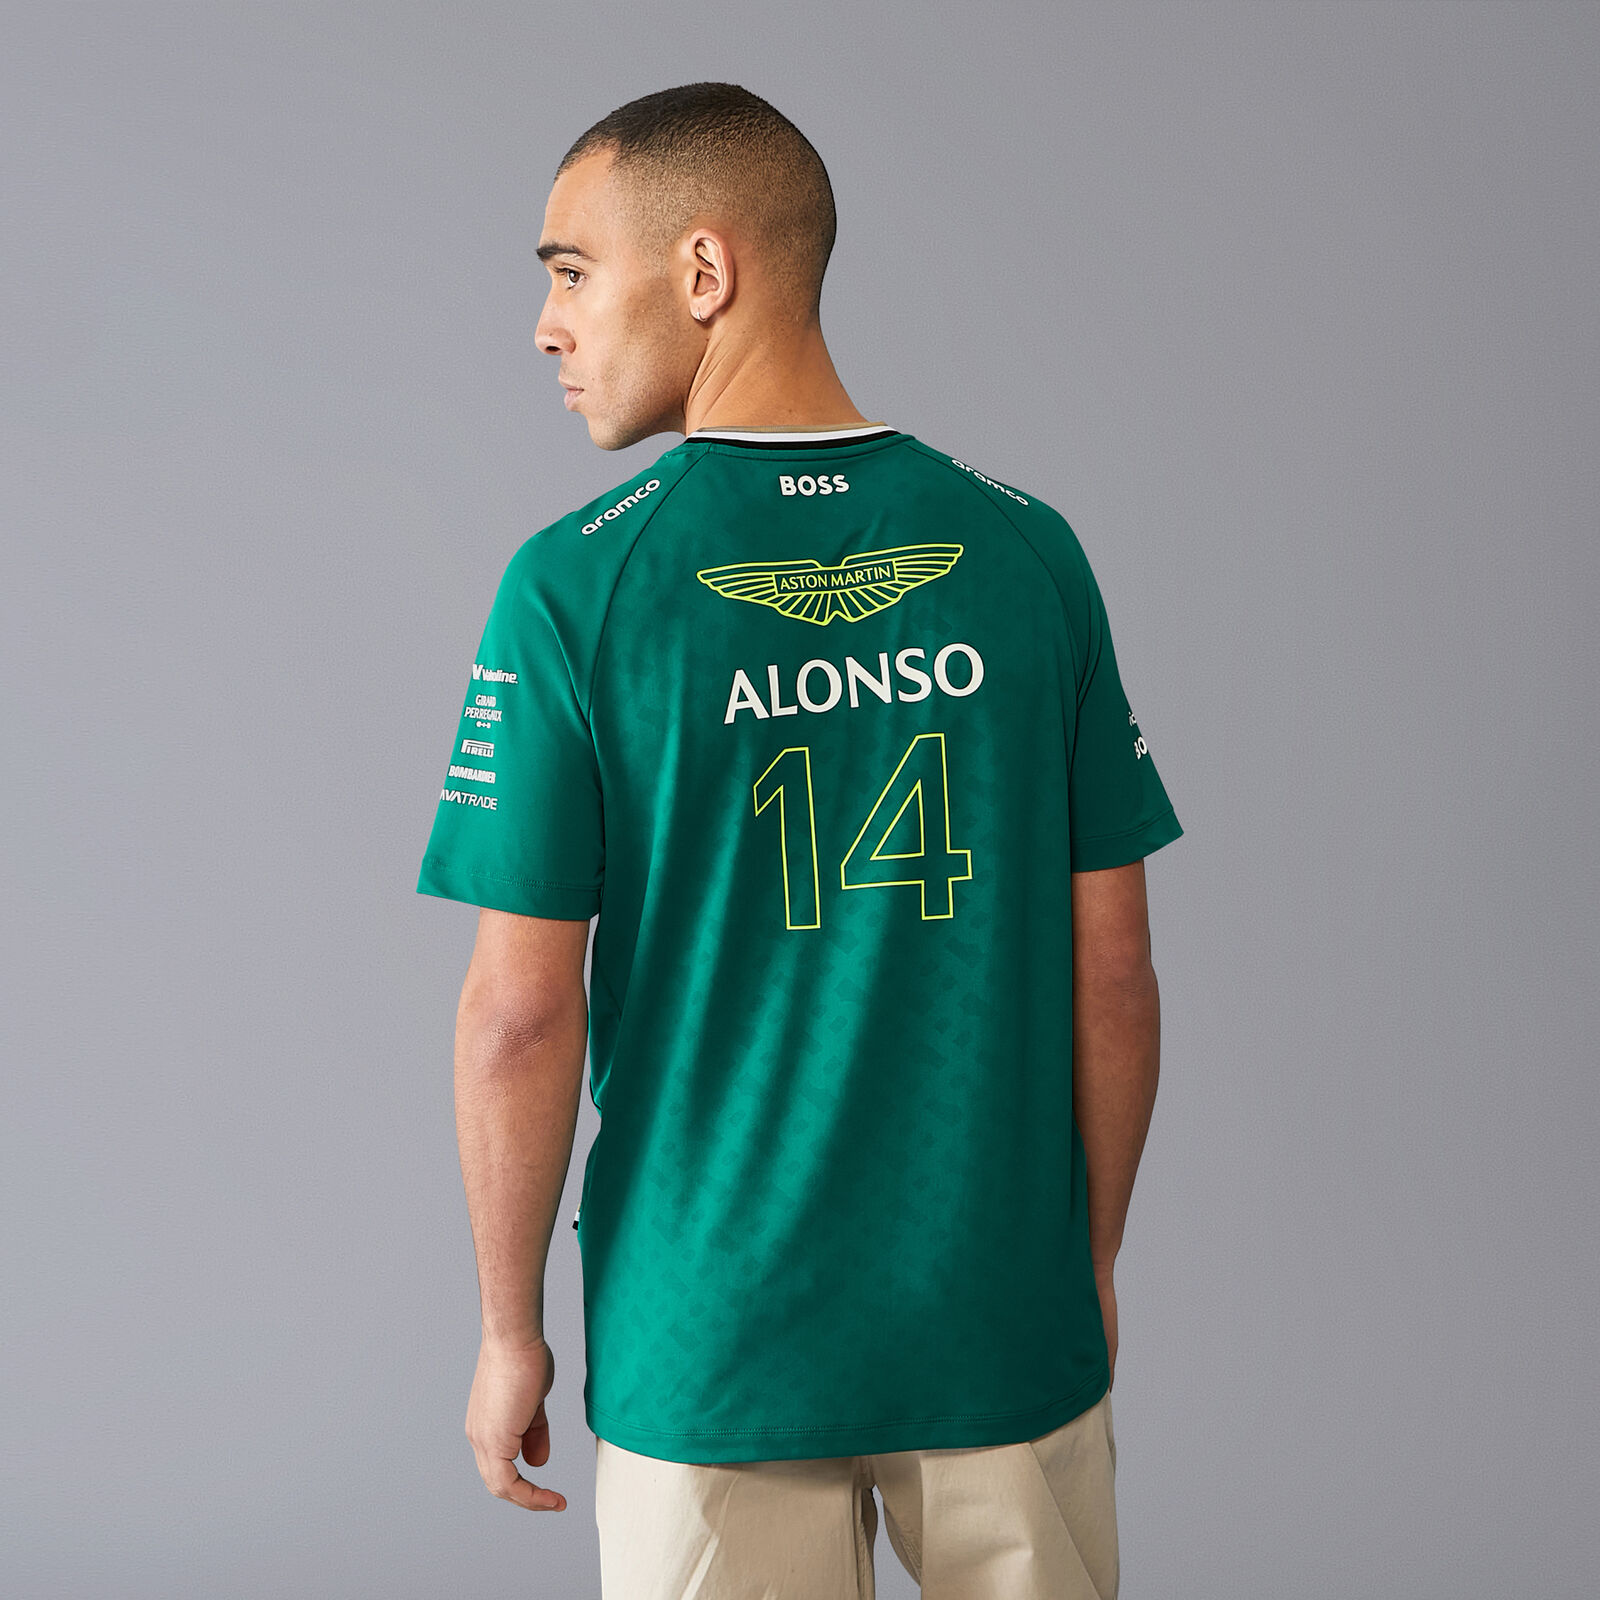 Camiseta Fernando Alonso, Aston Martin de segunda mano por 20 EUR